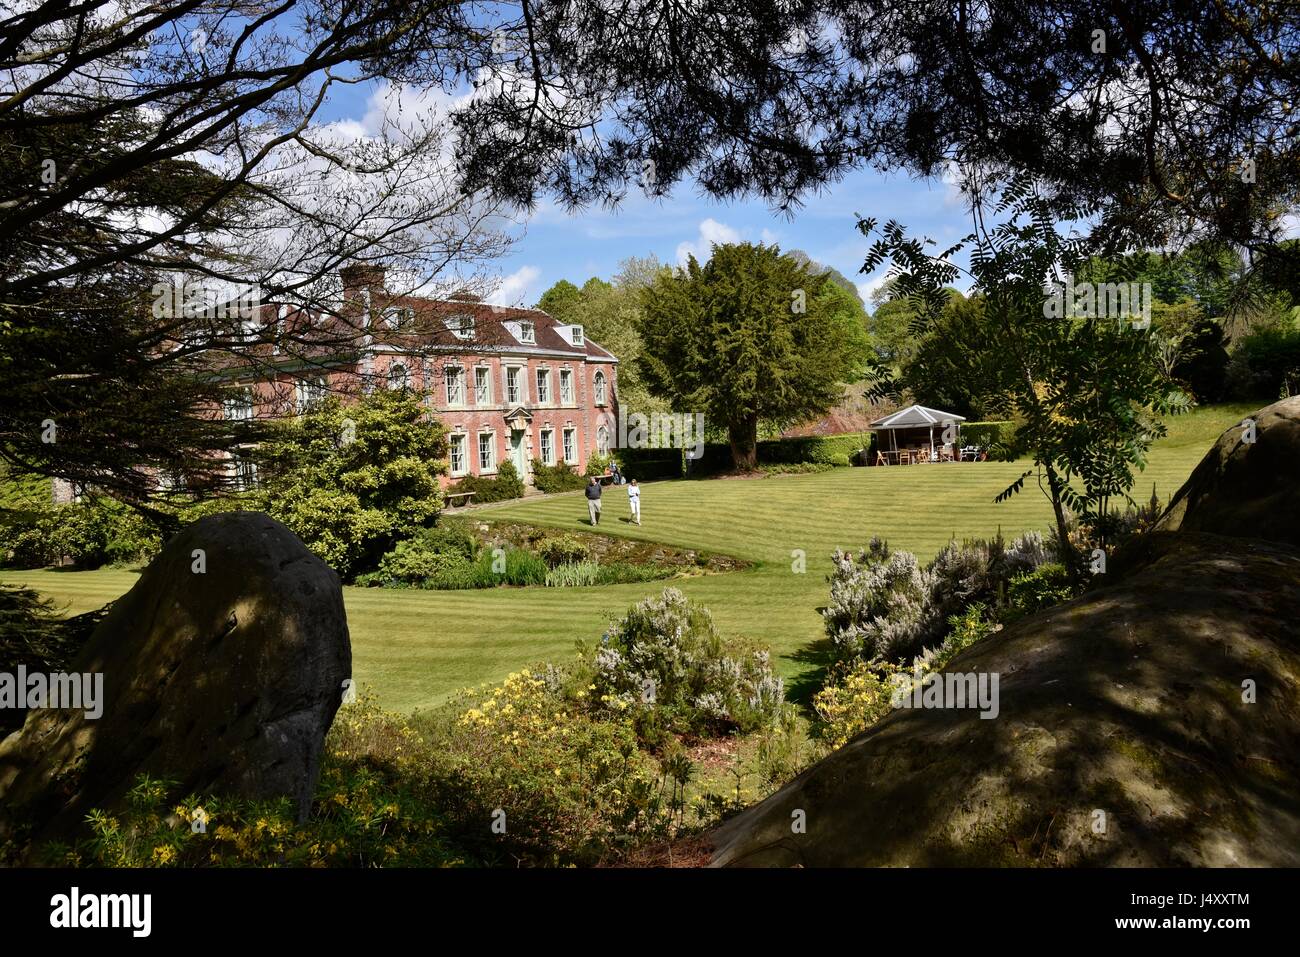 UK Groombridge, Tunbridge Wells, East Sussex Penns in den Felsen. eine frühe 18. Jahrhundert Haus und Garten, gebaut für die Familie von William Penn.. Stockfoto